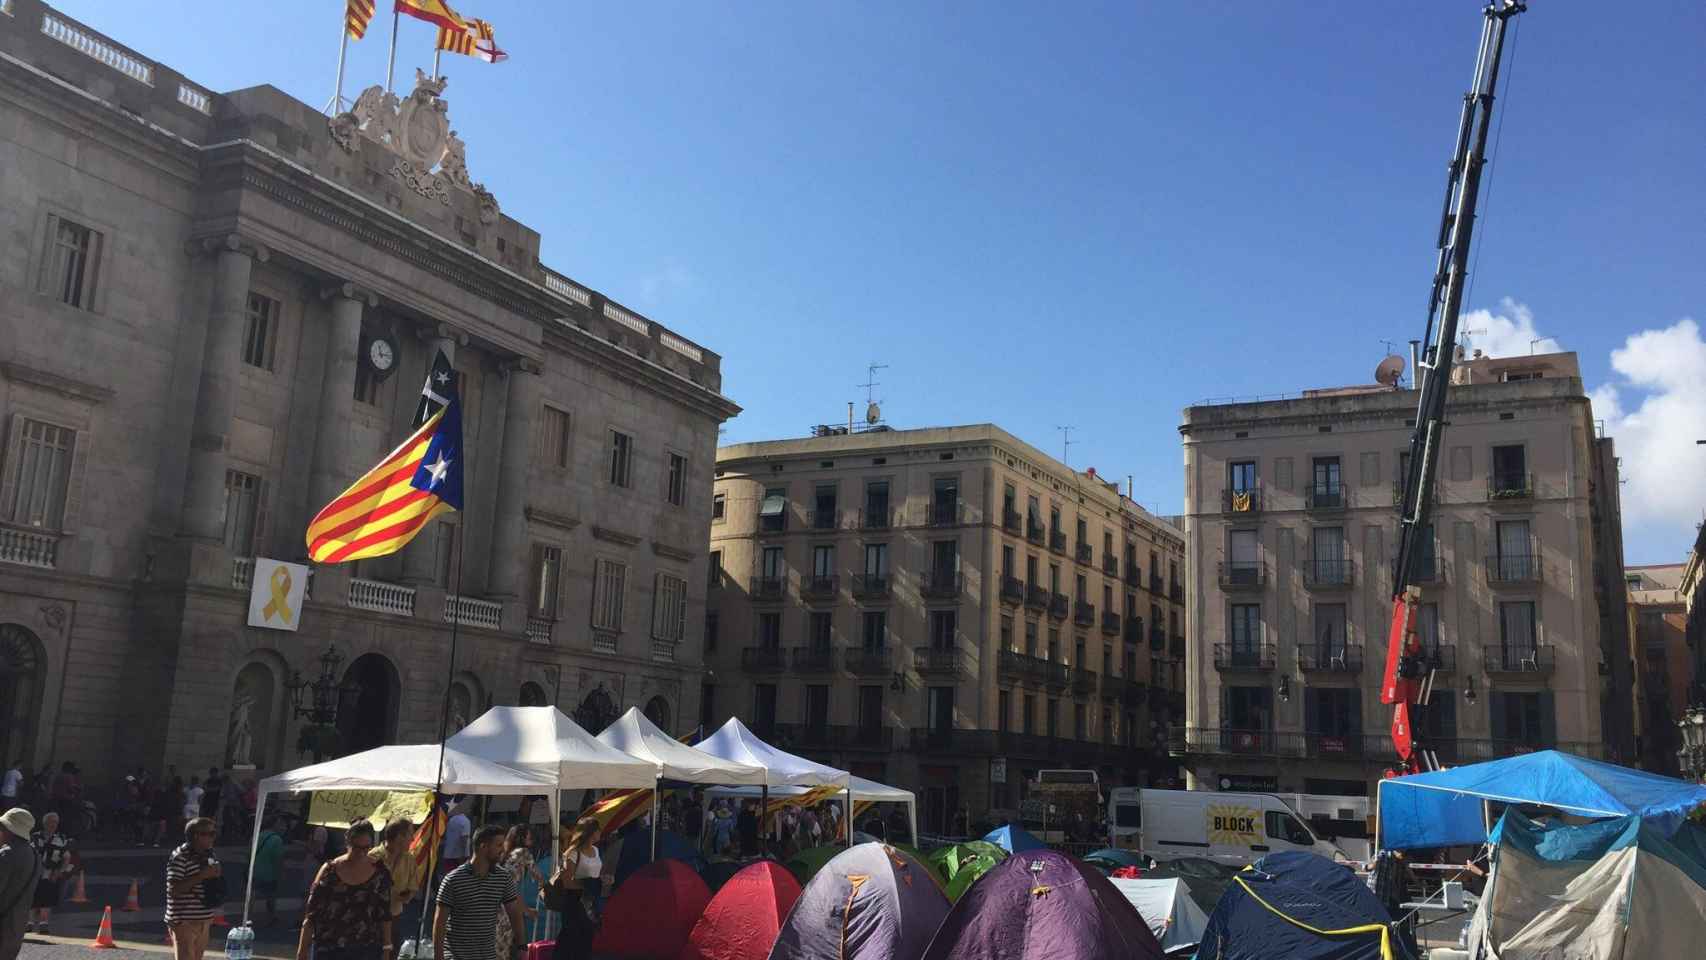 La acampada independentista lleva instalada en la plaza de Sant Jaume desde la Diada / @albertofdezxbcn